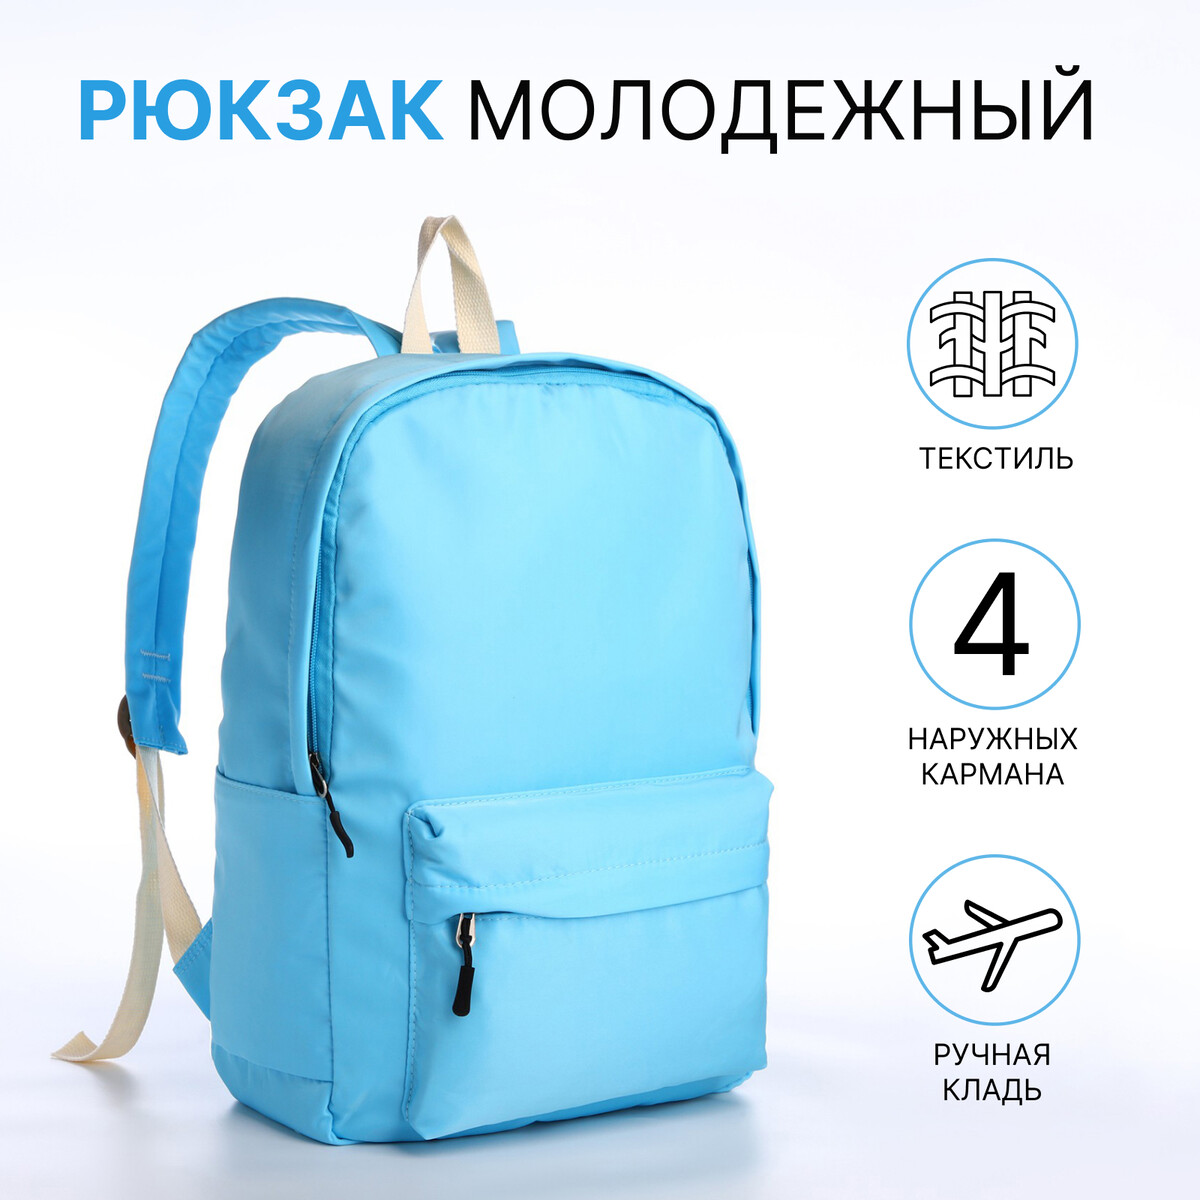 Рюкзак молодежный из текстиля на молнии, 2 кармана, цвет голубой